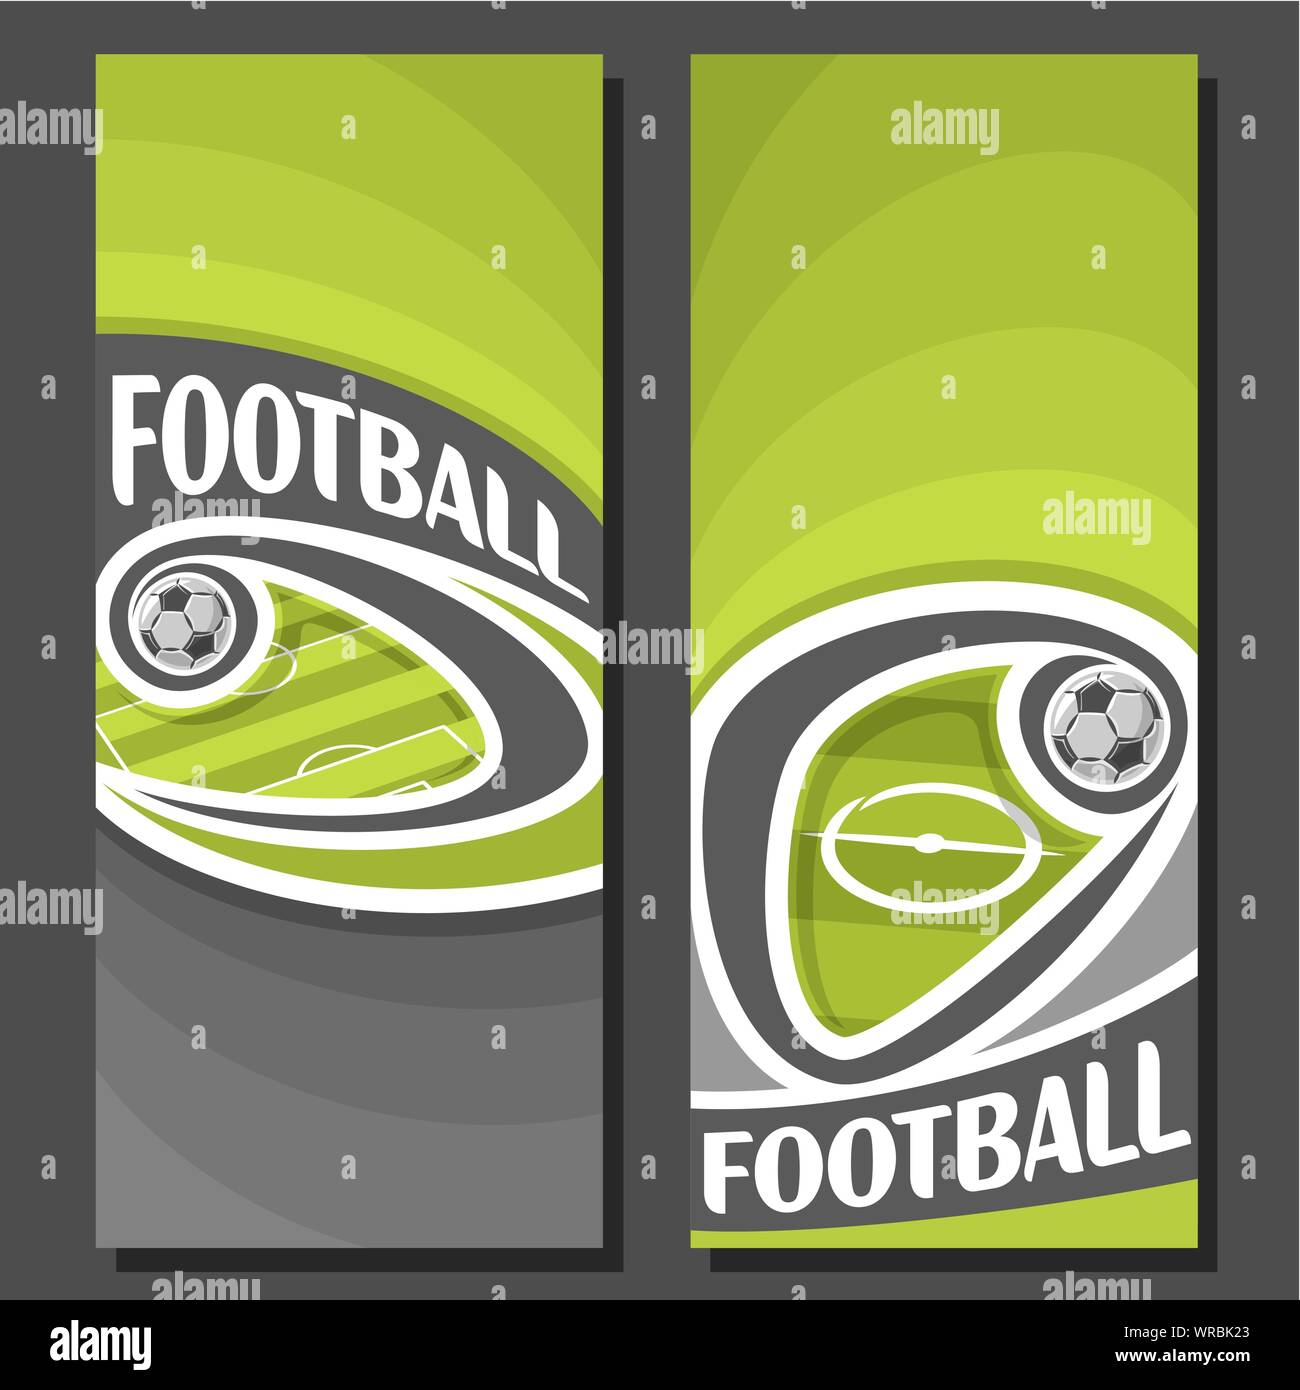 Vettore banner verticale per il calcio: 2 formati di testo sul tema calcistico, verde campo di calcio con battenti sulla curva palla su sfondo nero. Illustrazione Vettoriale